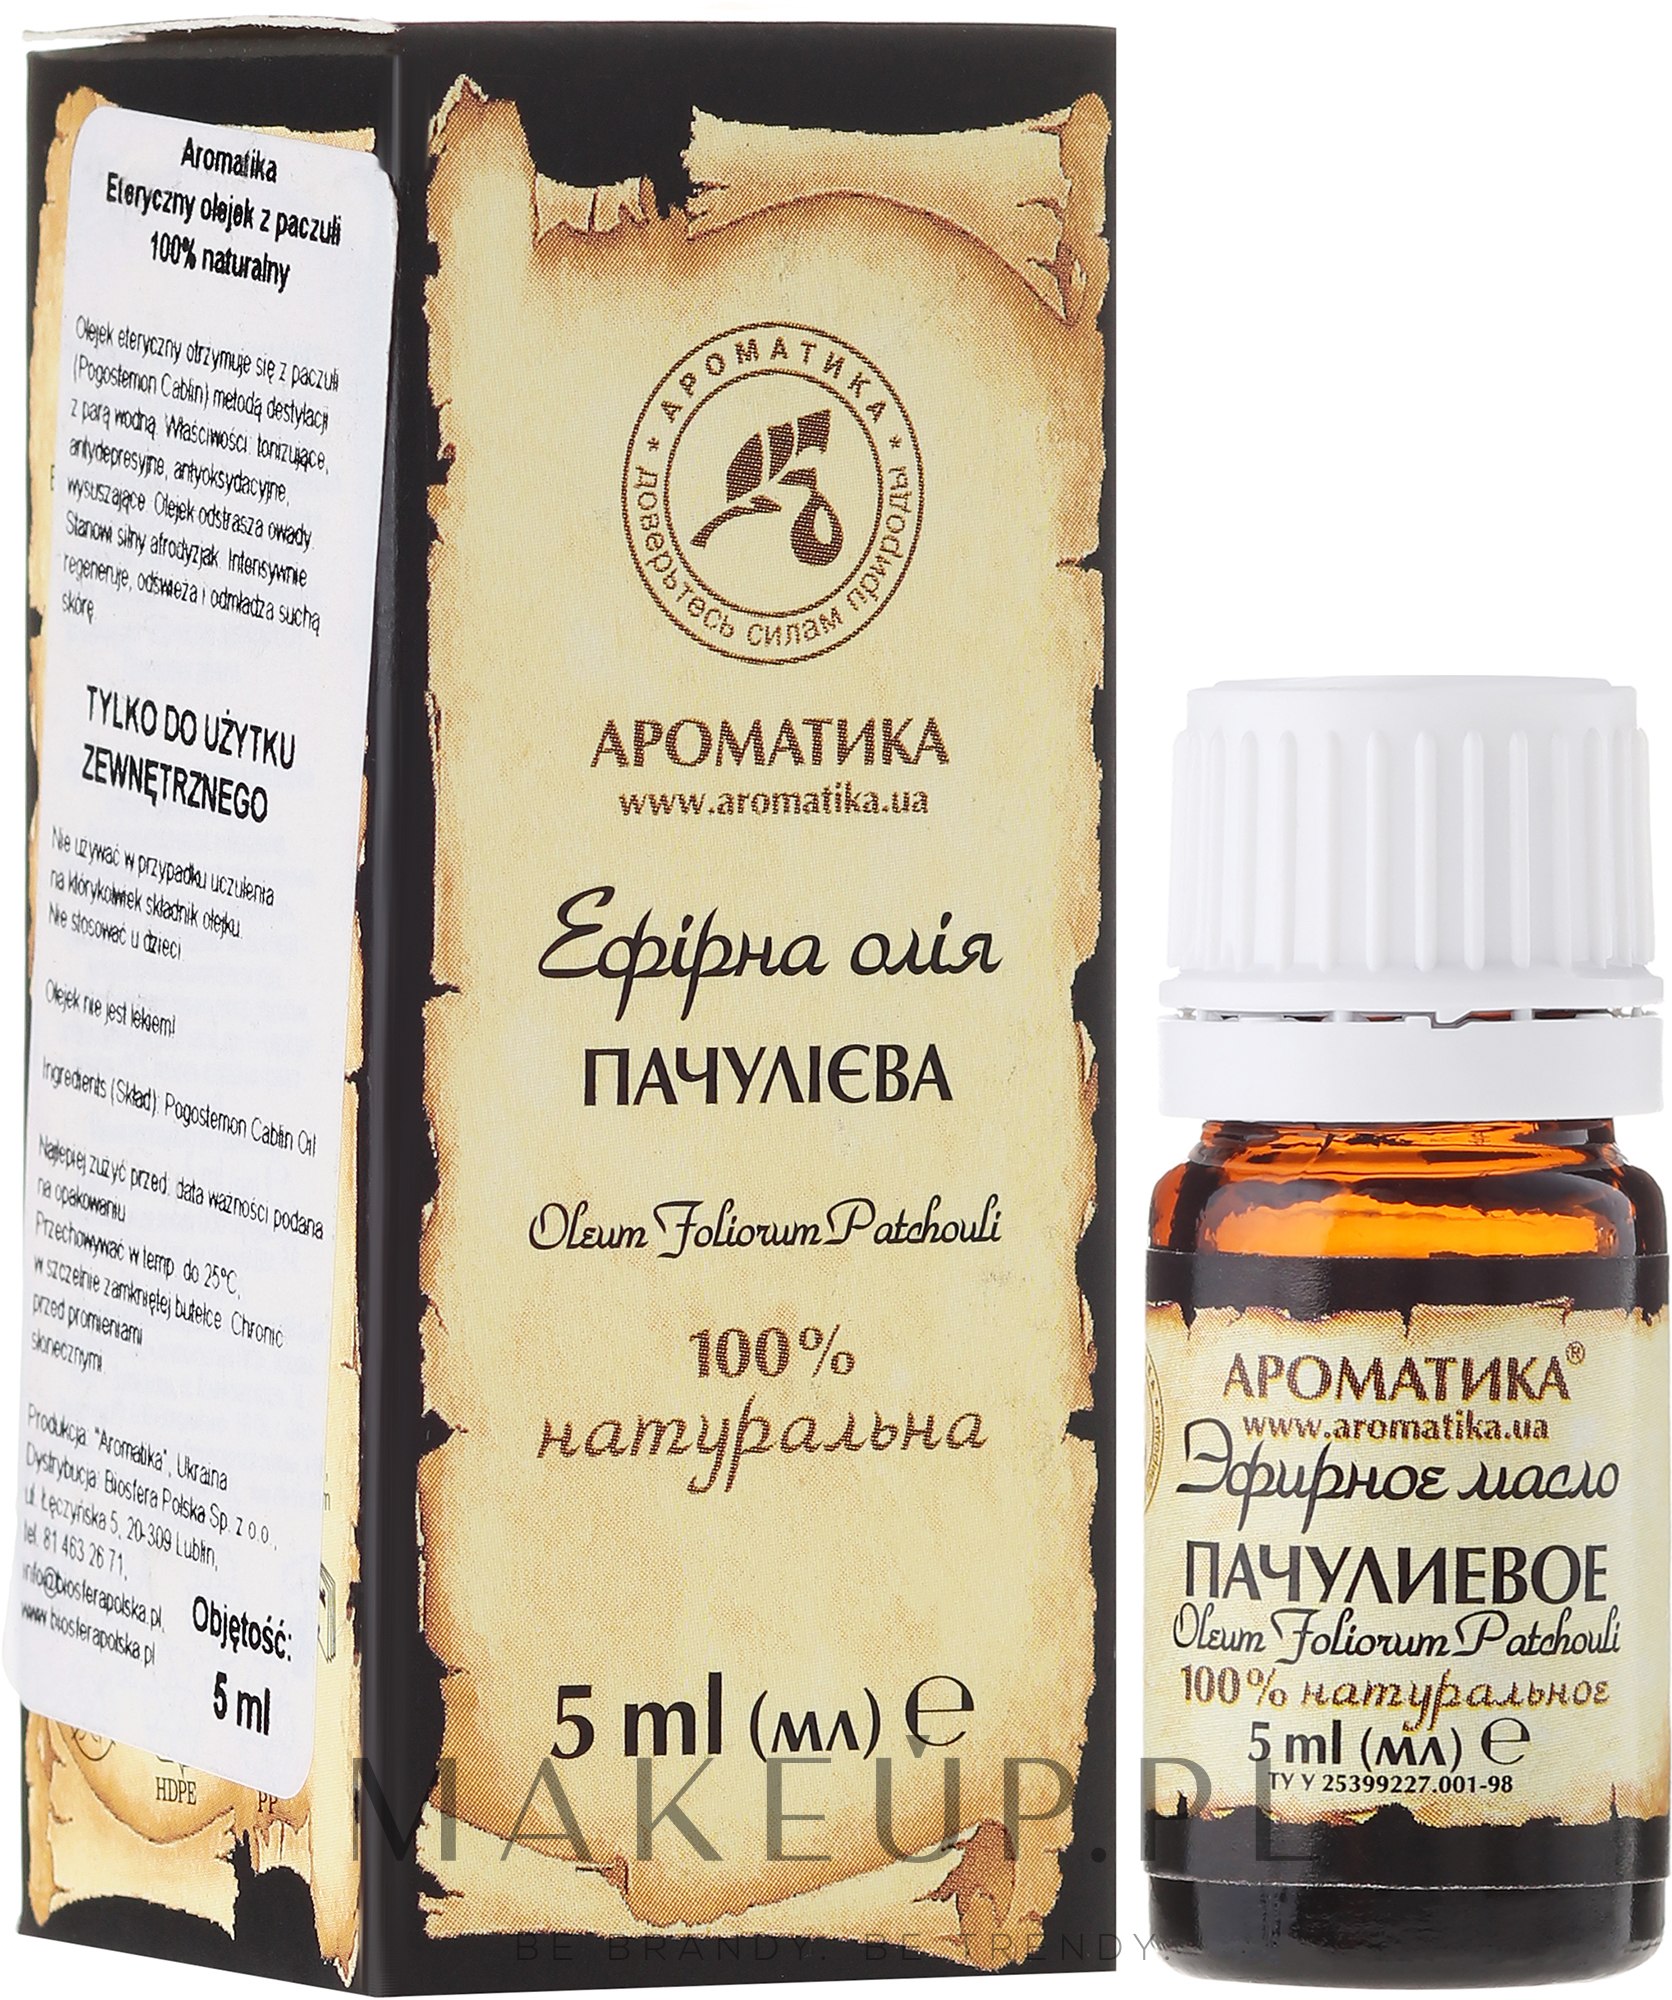 100% naturalny olejek paczulowy - Aromatika — Zdjęcie 5 ml